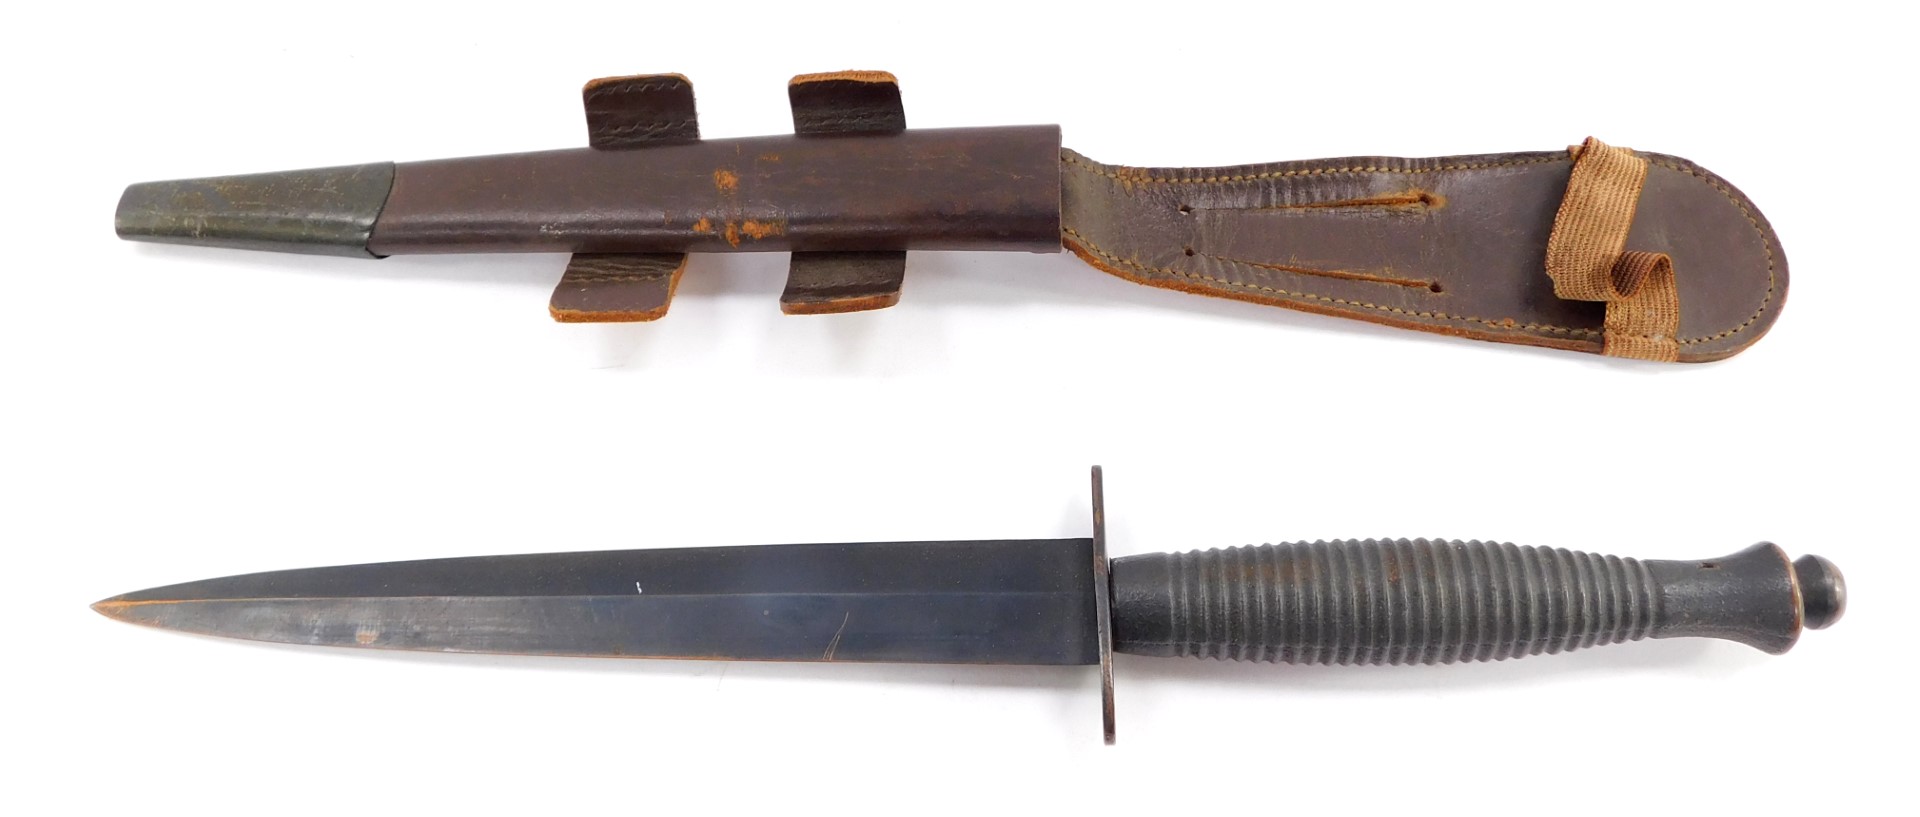 A Fairbairn Sykes Commando knife, with a foiled grip, leather sheath, 31cm high.